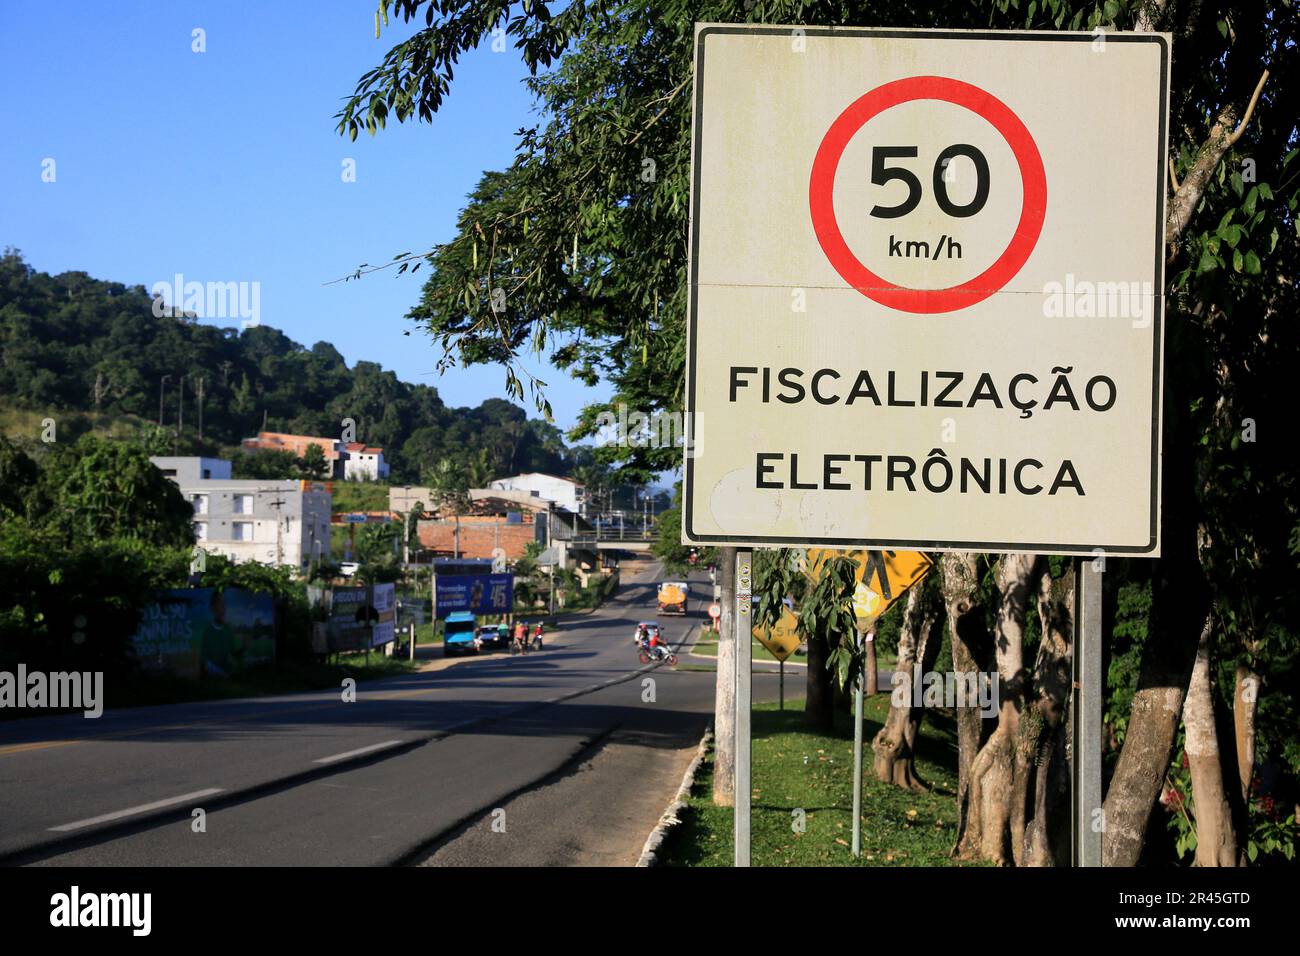 gandu, bahia, brasilien - 19. Mai 2023: Die Ampeltafel zeigt eine Geschwindigkeit von 50 km/h mit Radarkamera auf der Bundesautobahn br 101 in der Stadt gandu an. Stockfoto